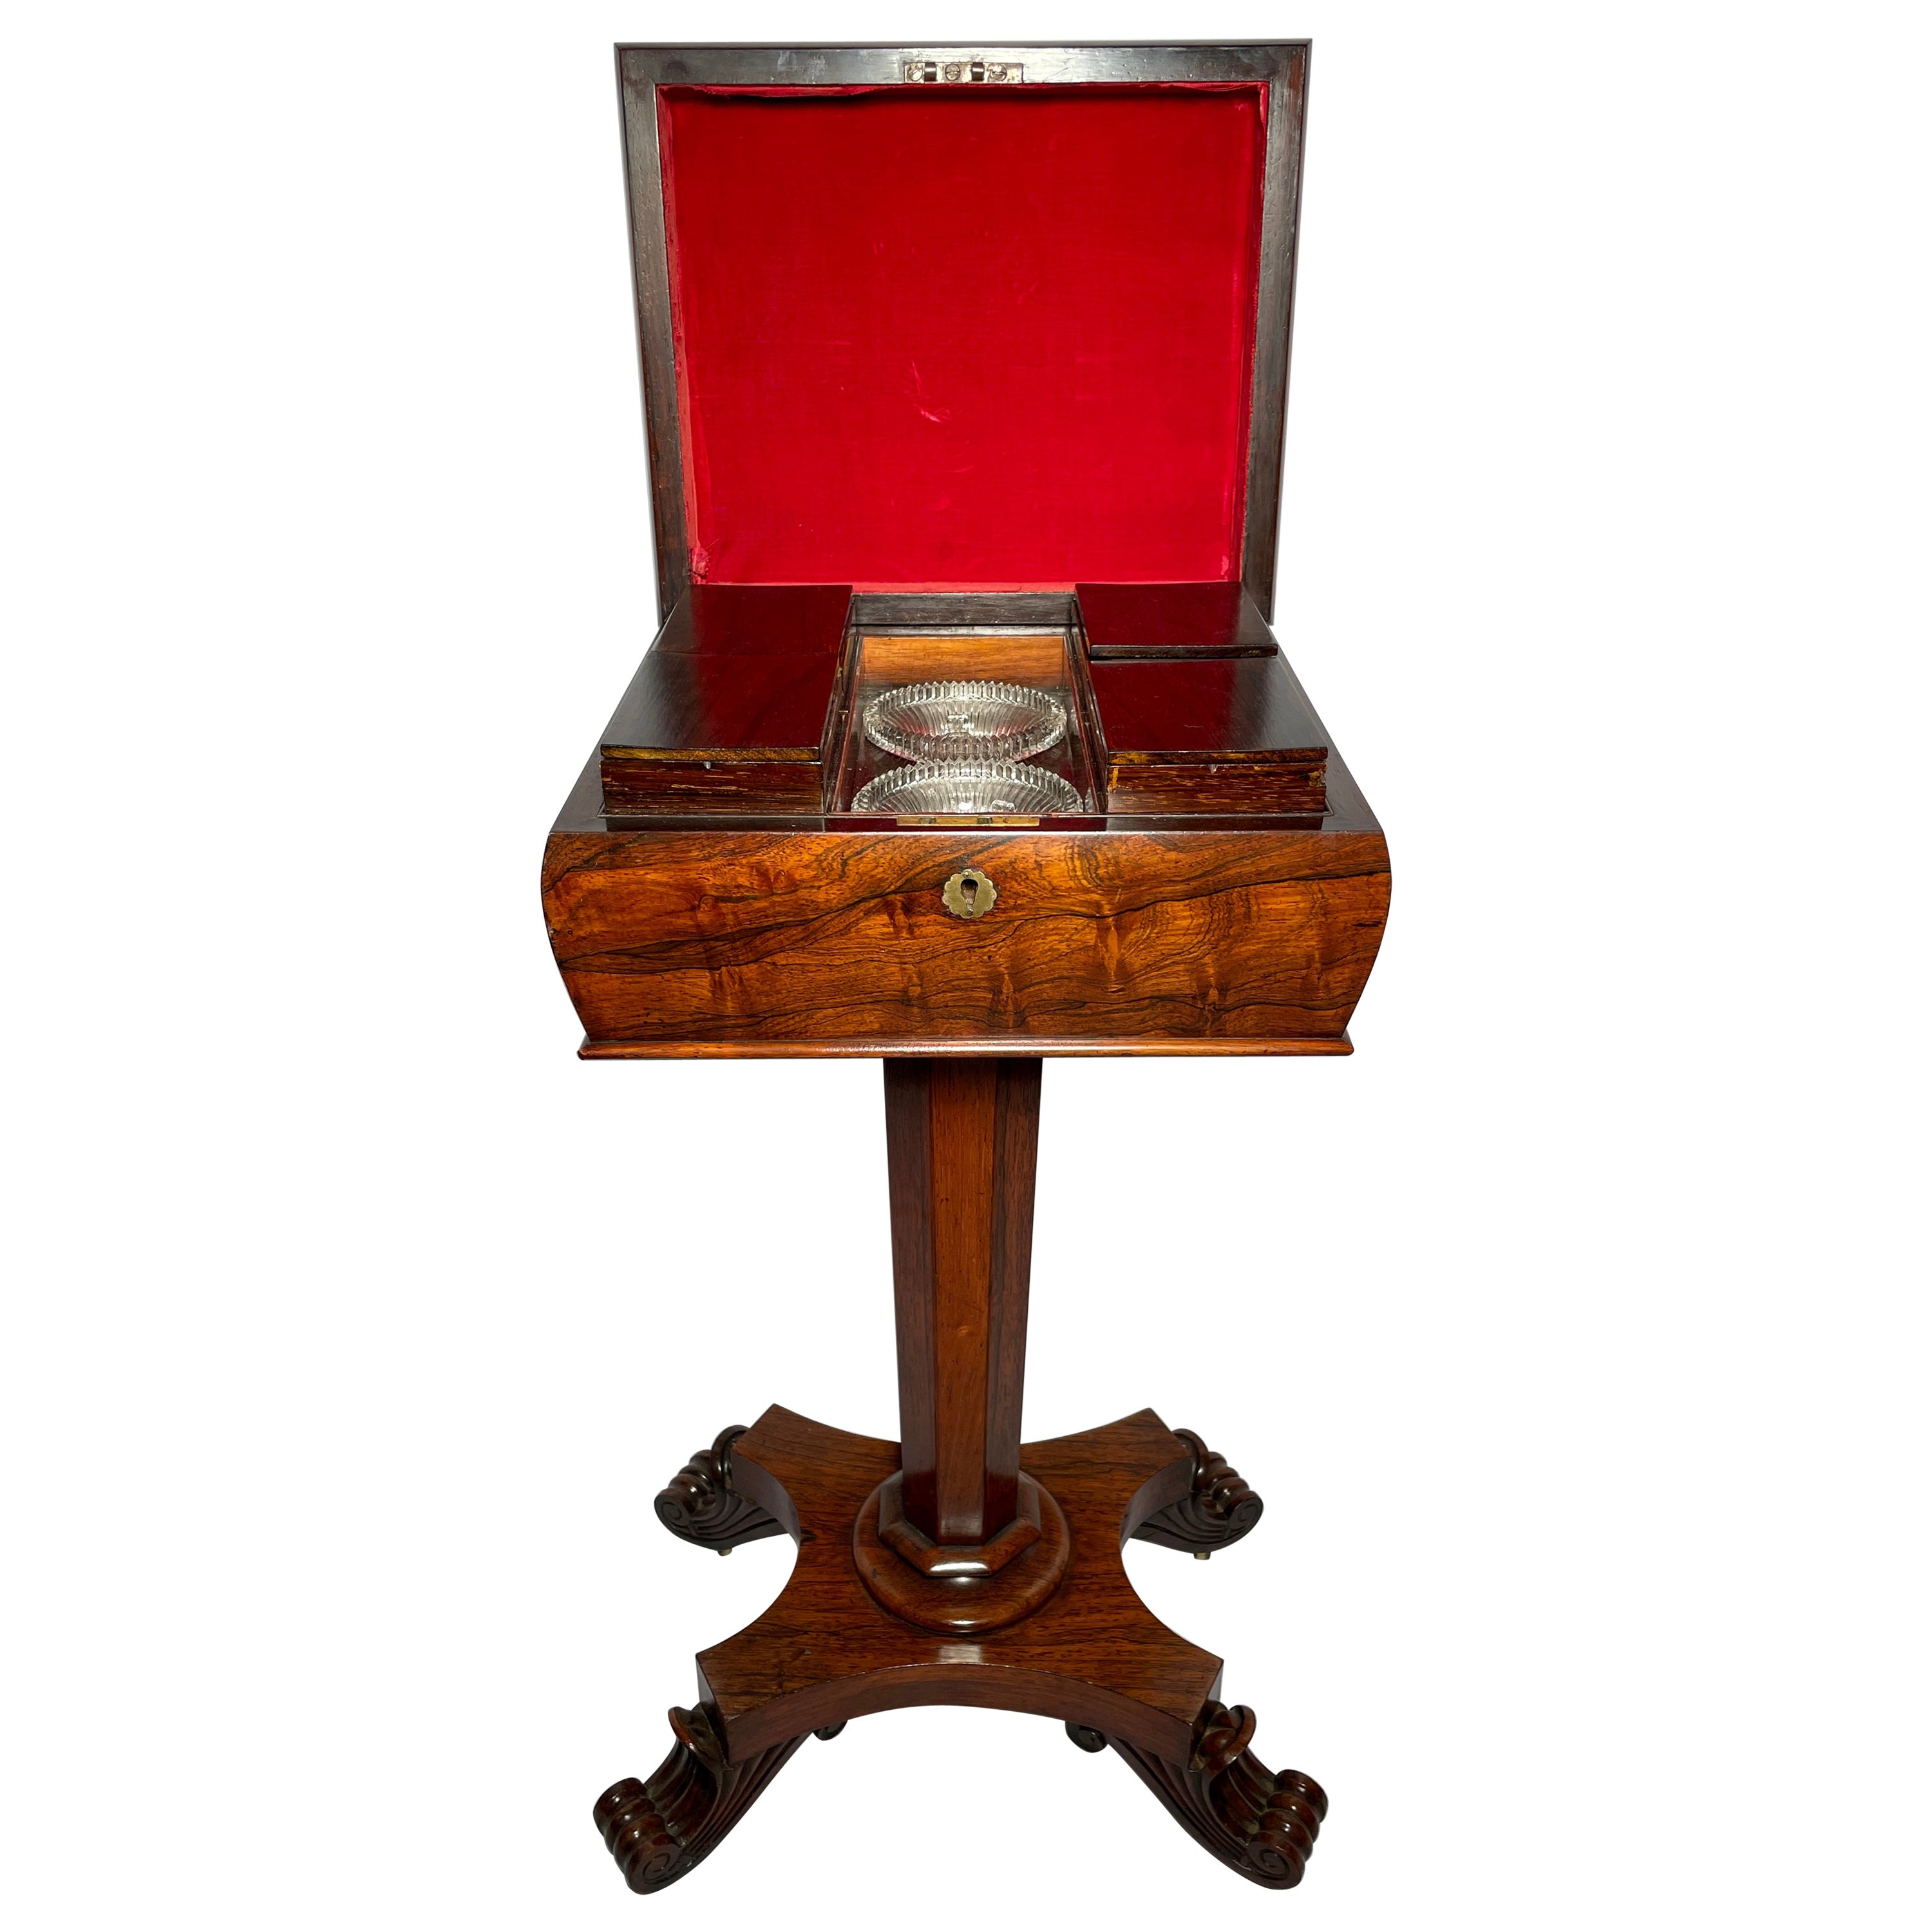 Ancienne table à thé anglaise en bois de rose avec intérieur complet, vers 1845-1865.